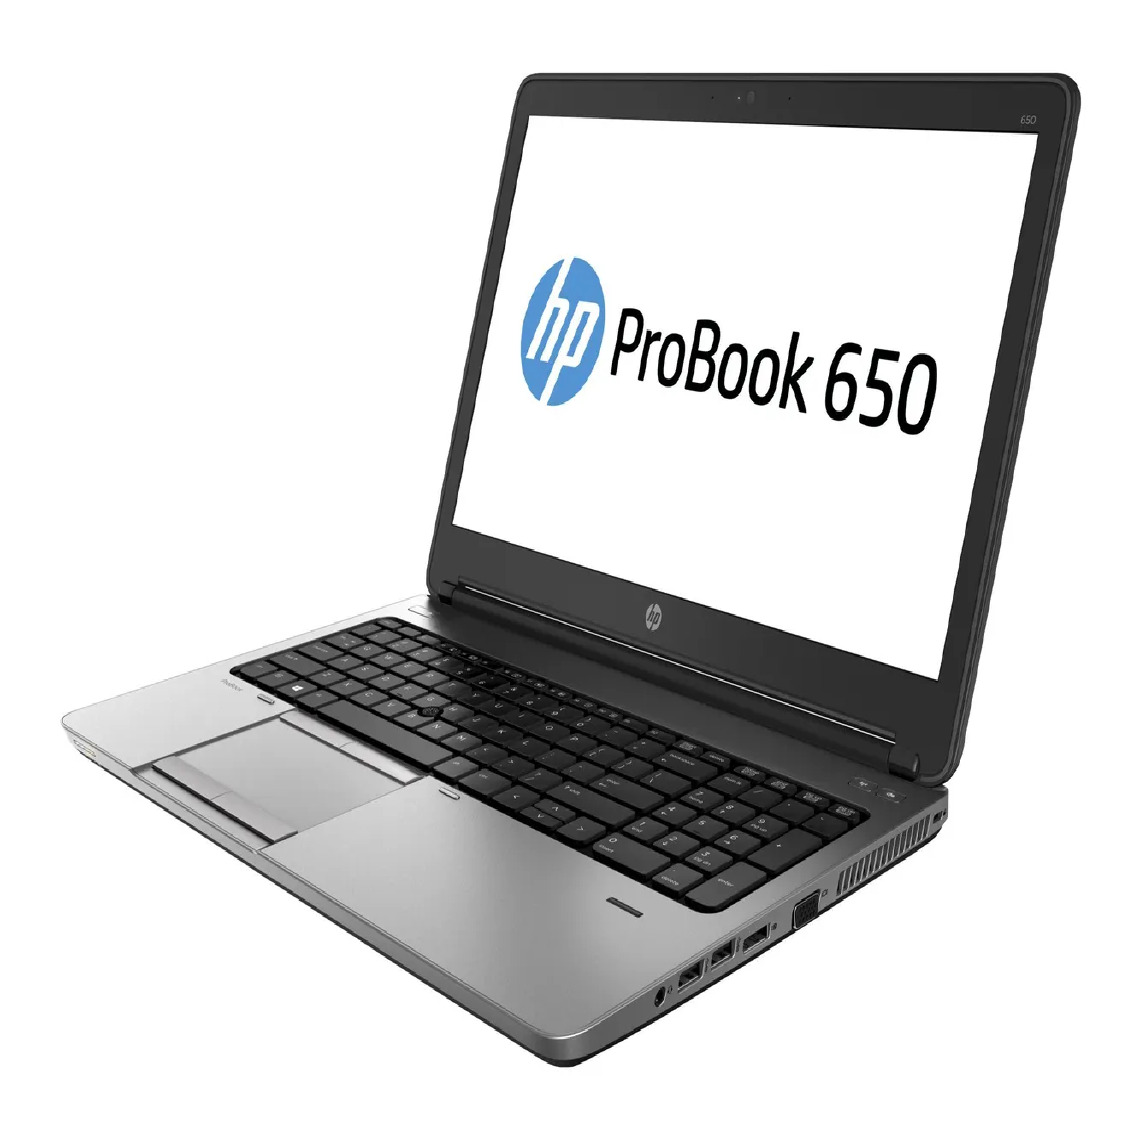 Hp - HP ProBook 650 G1 i5-4200M 8Go 250Go SSD 15.6'' Win 10Pro - PC Portable